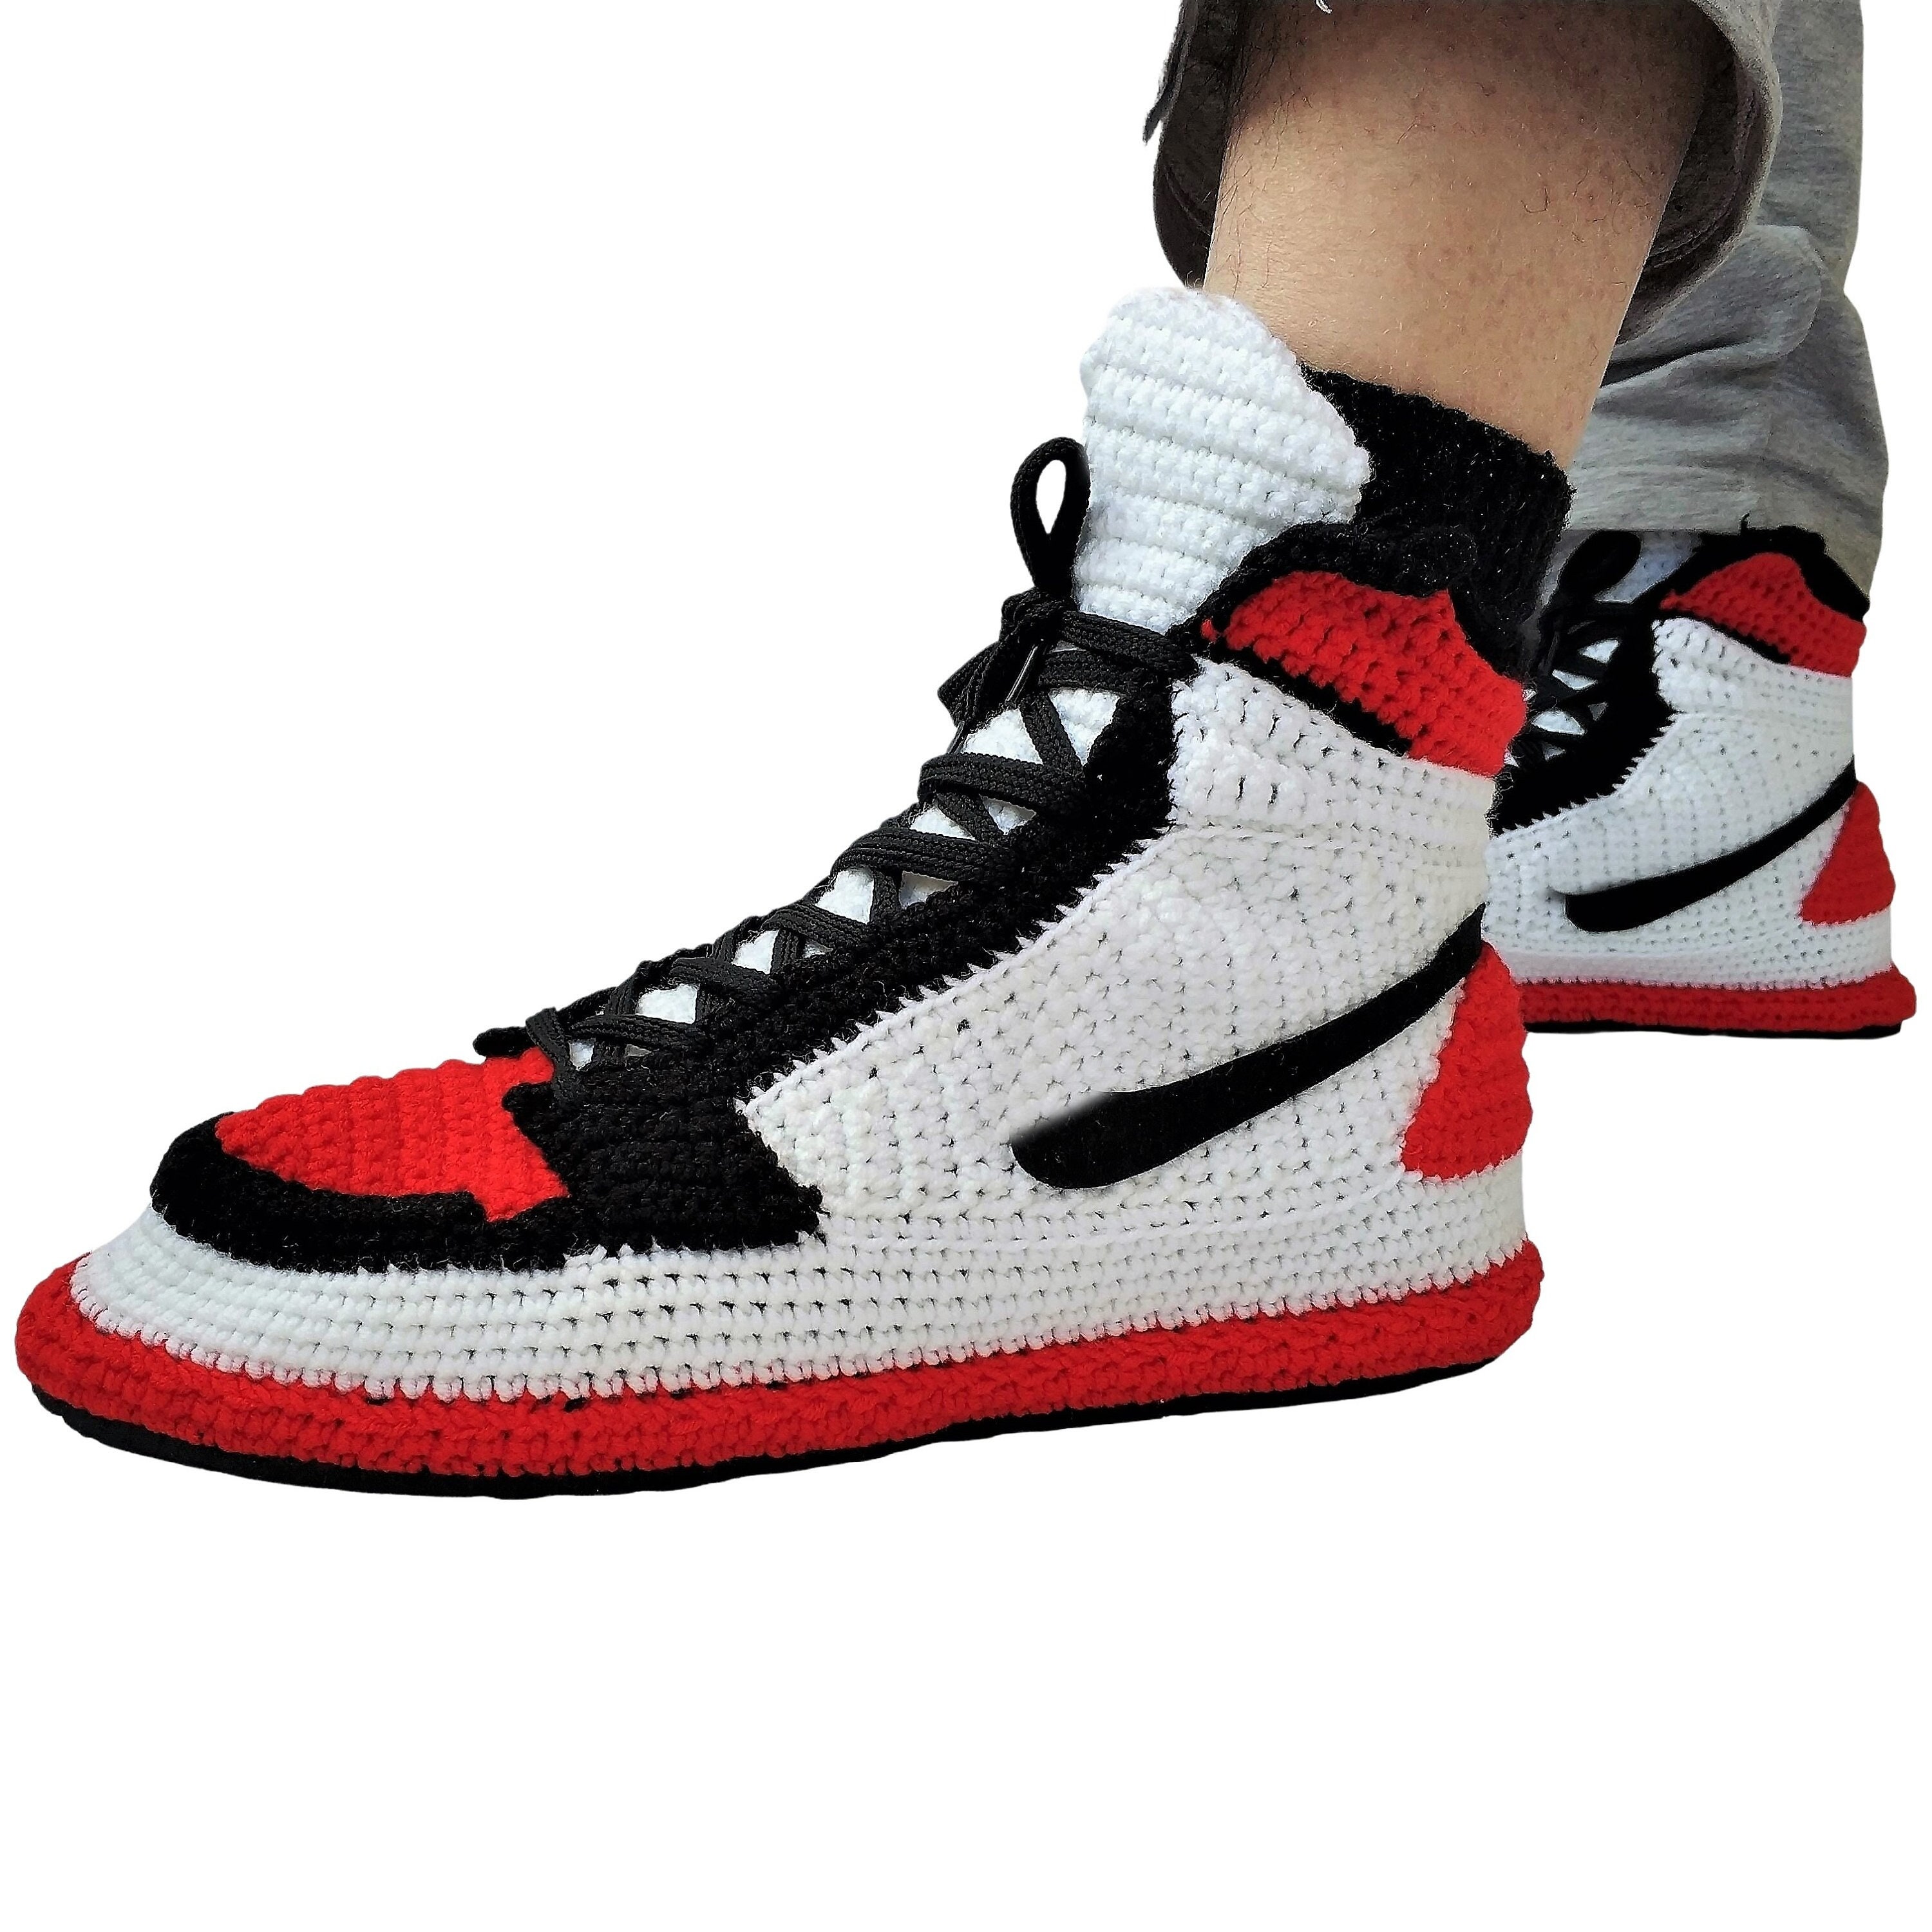 Jordans Toe Retro Sneaker Handmade 